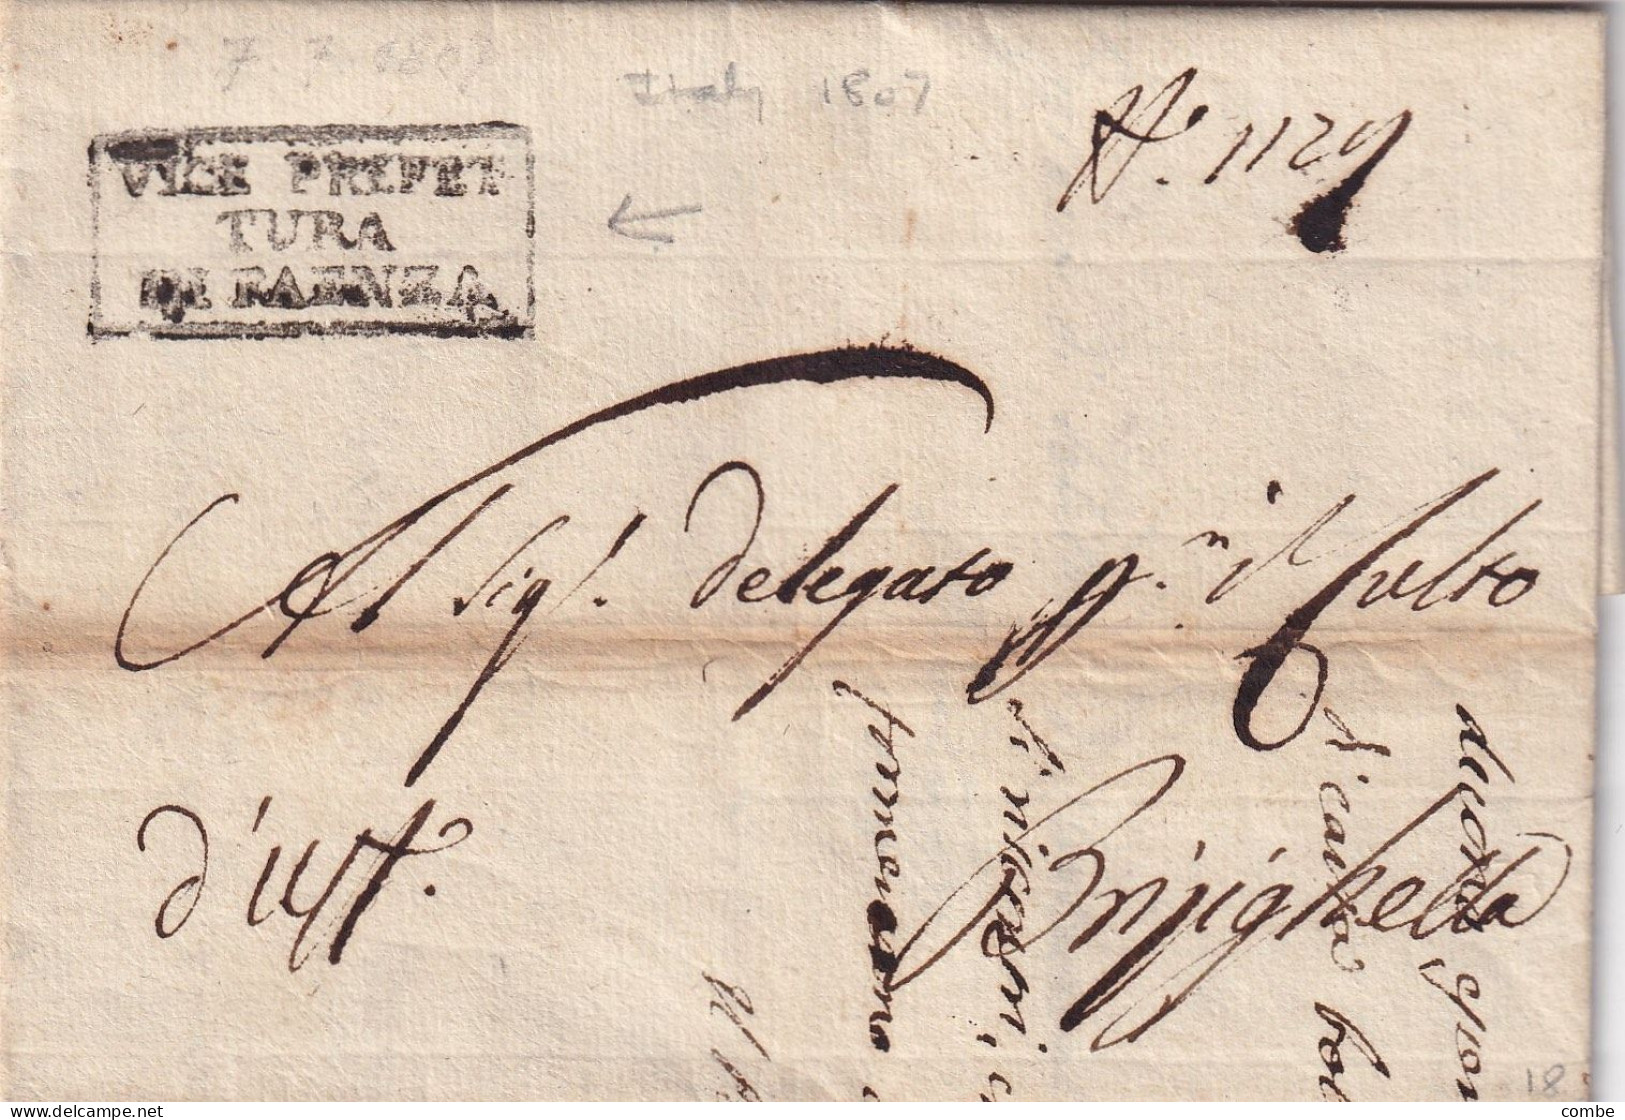 LETTERA ITALIA. 7 LUGLIO 1807. VICE PREFET/TURA/DE FAENZA. CARLO MANTEGAZZA. DEPARTIMENTO DEL RUBICONE. REGNO - 1. ...-1850 Vorphilatelie